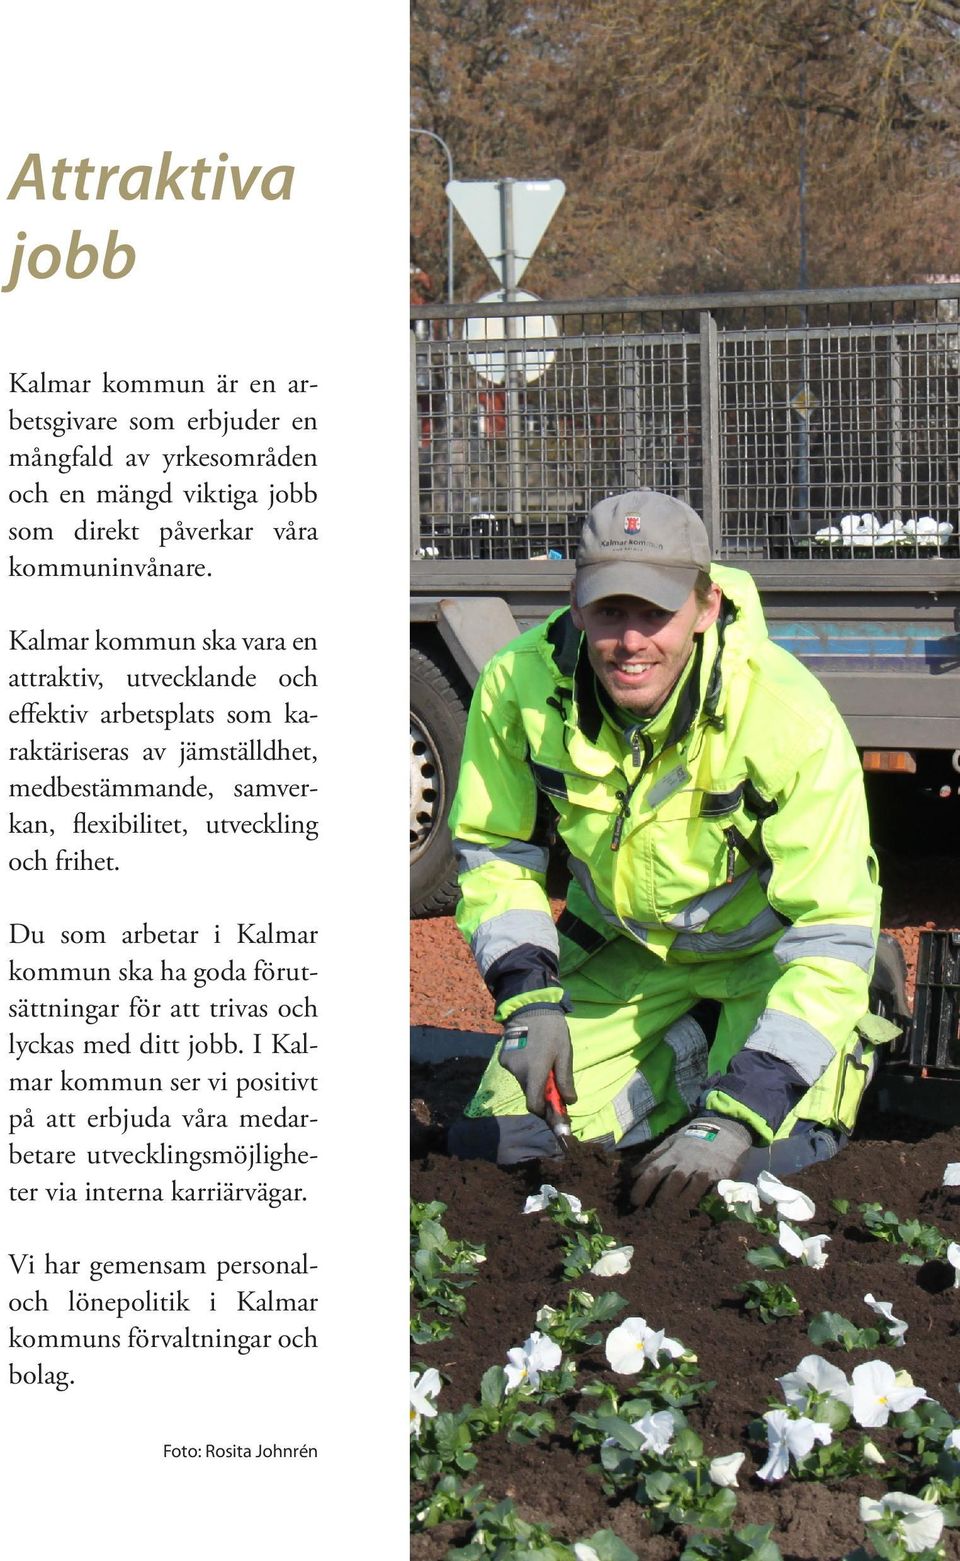 och frihet. Du som arbetar i Kalmar kommun ska ha goda förutsättningar för att trivas och lyckas med ditt jobb.